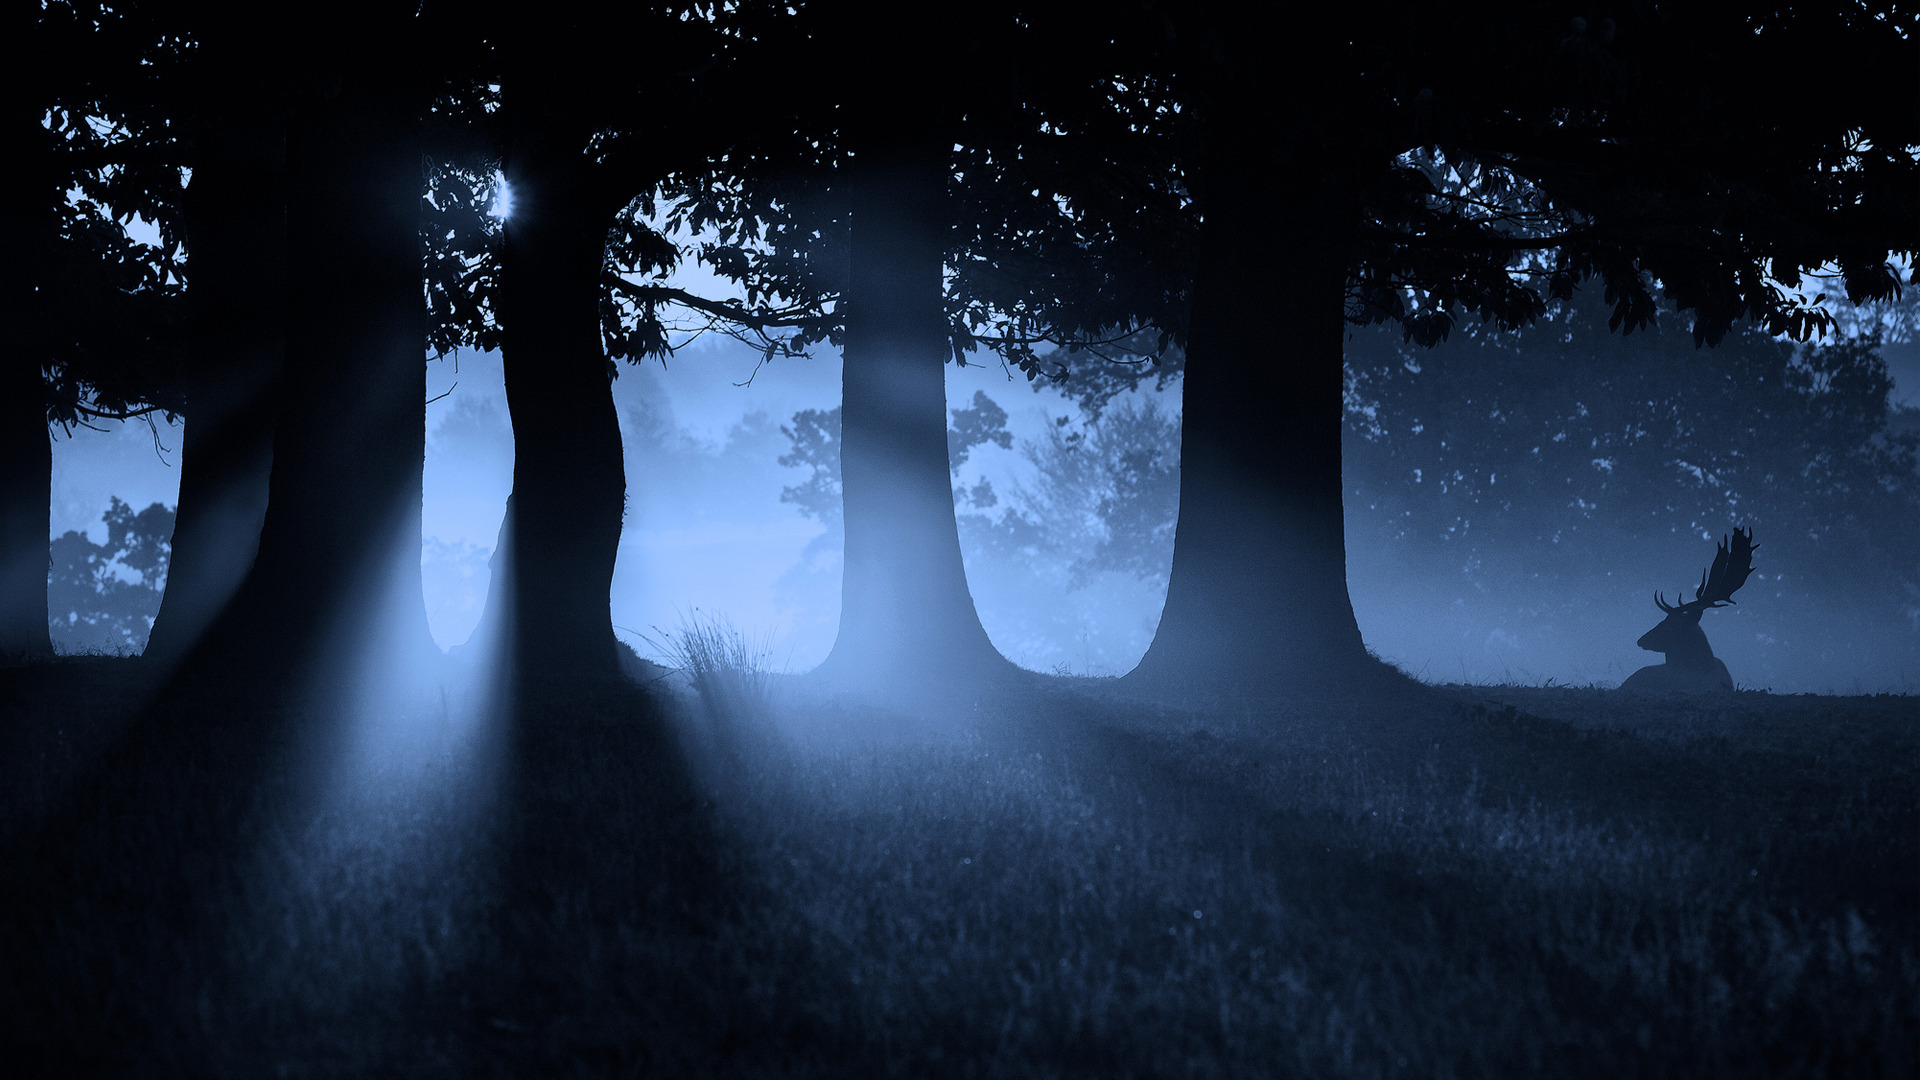 «Ночь в лесу». Ночной лес. Лунный свет в лесу. Мистический лес. Лунной ночью свет загадочно